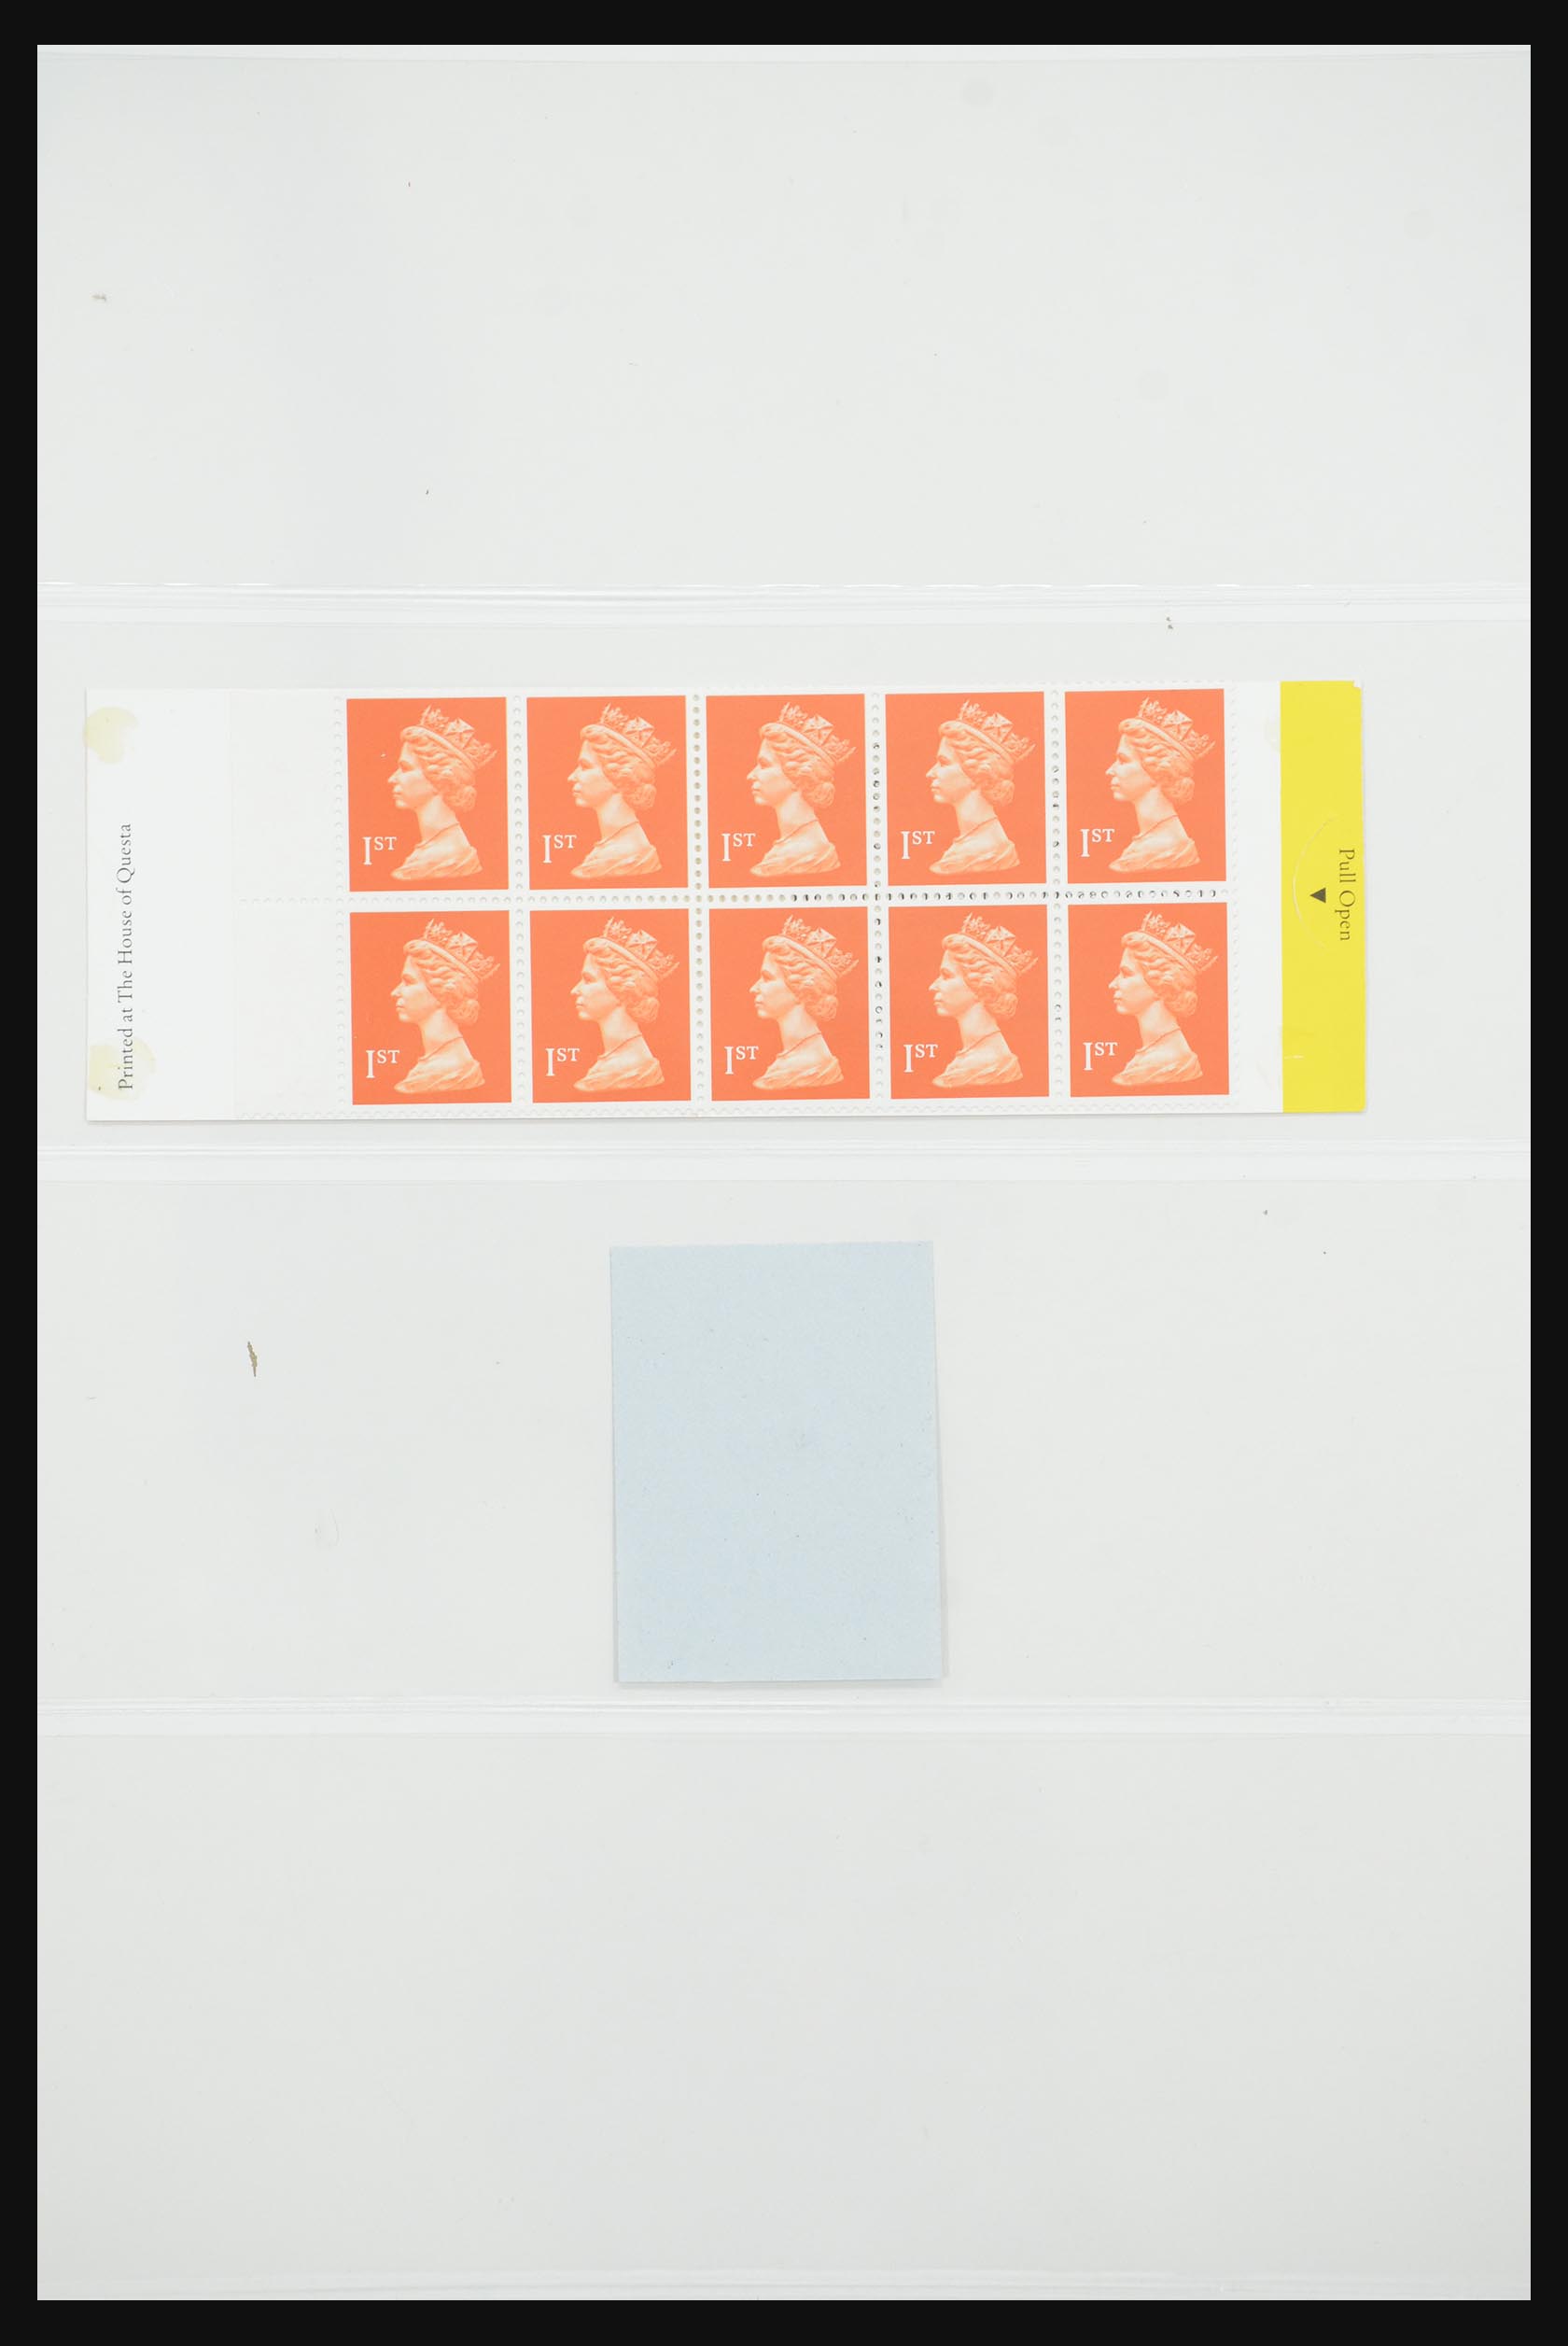 31960 100 - 31960 Engeland postzegelboekjes 1989-2000.